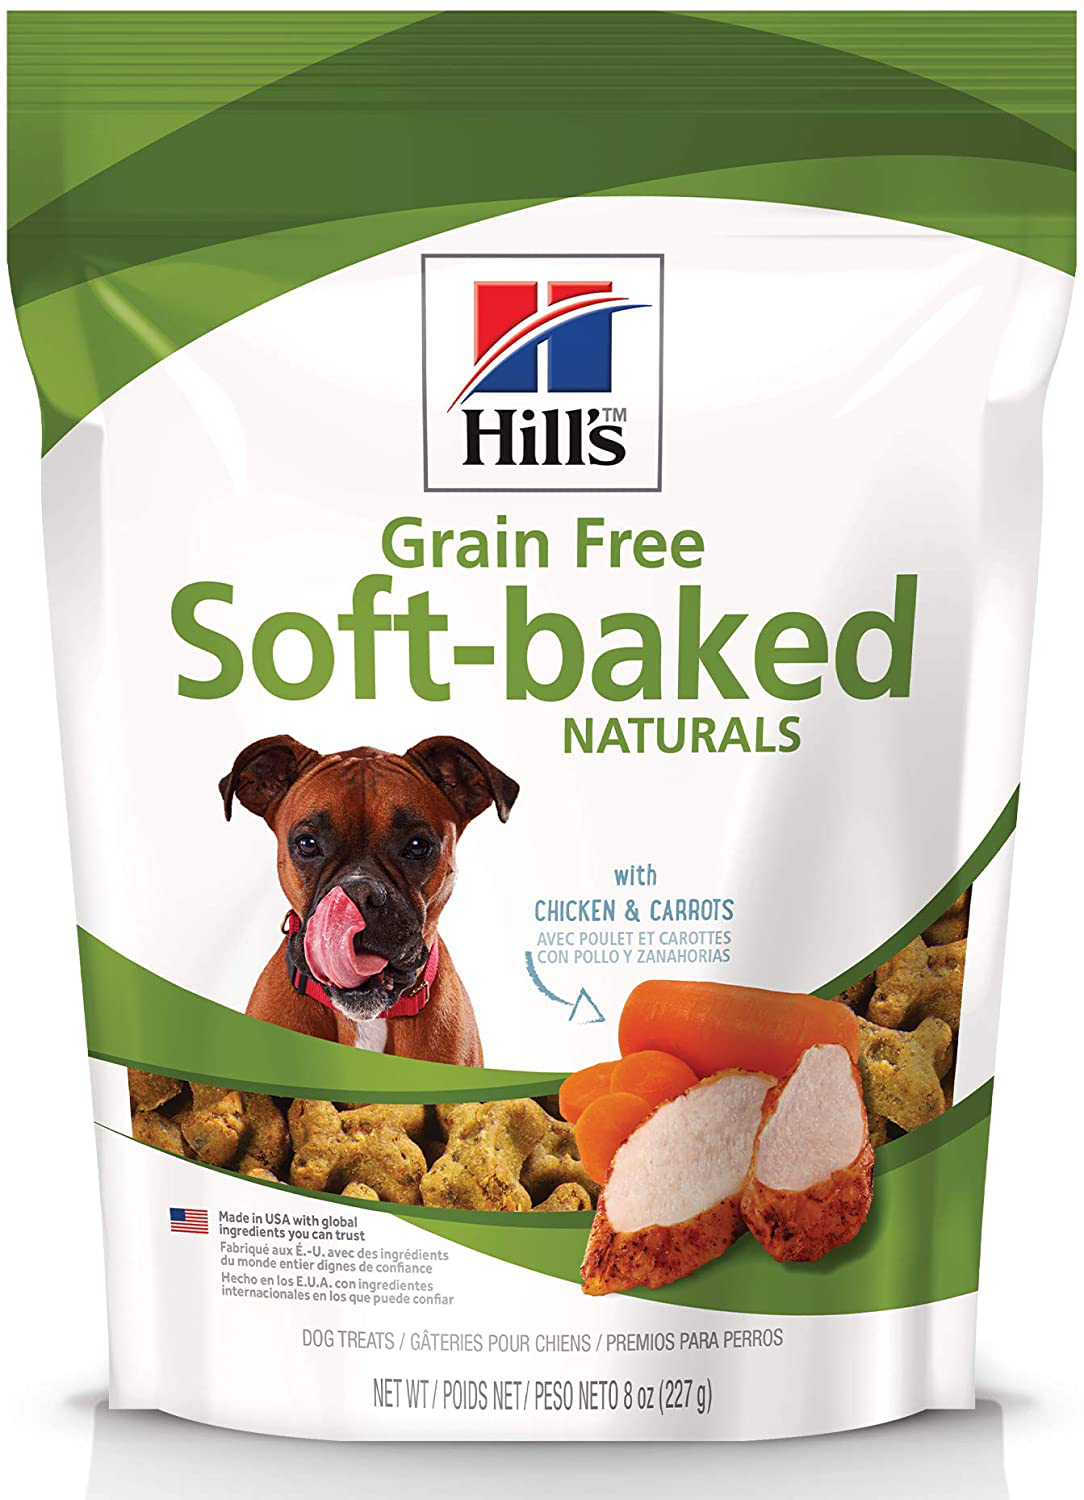 Hill’S Grain Free Soft-Baked Naturals Dog Treats Bundle Animals & Pet Supplies > Pet Supplies > Dog Supplies > Dog Treats Hill's Pet Nutrition Sales, Inc. Chicken & Carrots  